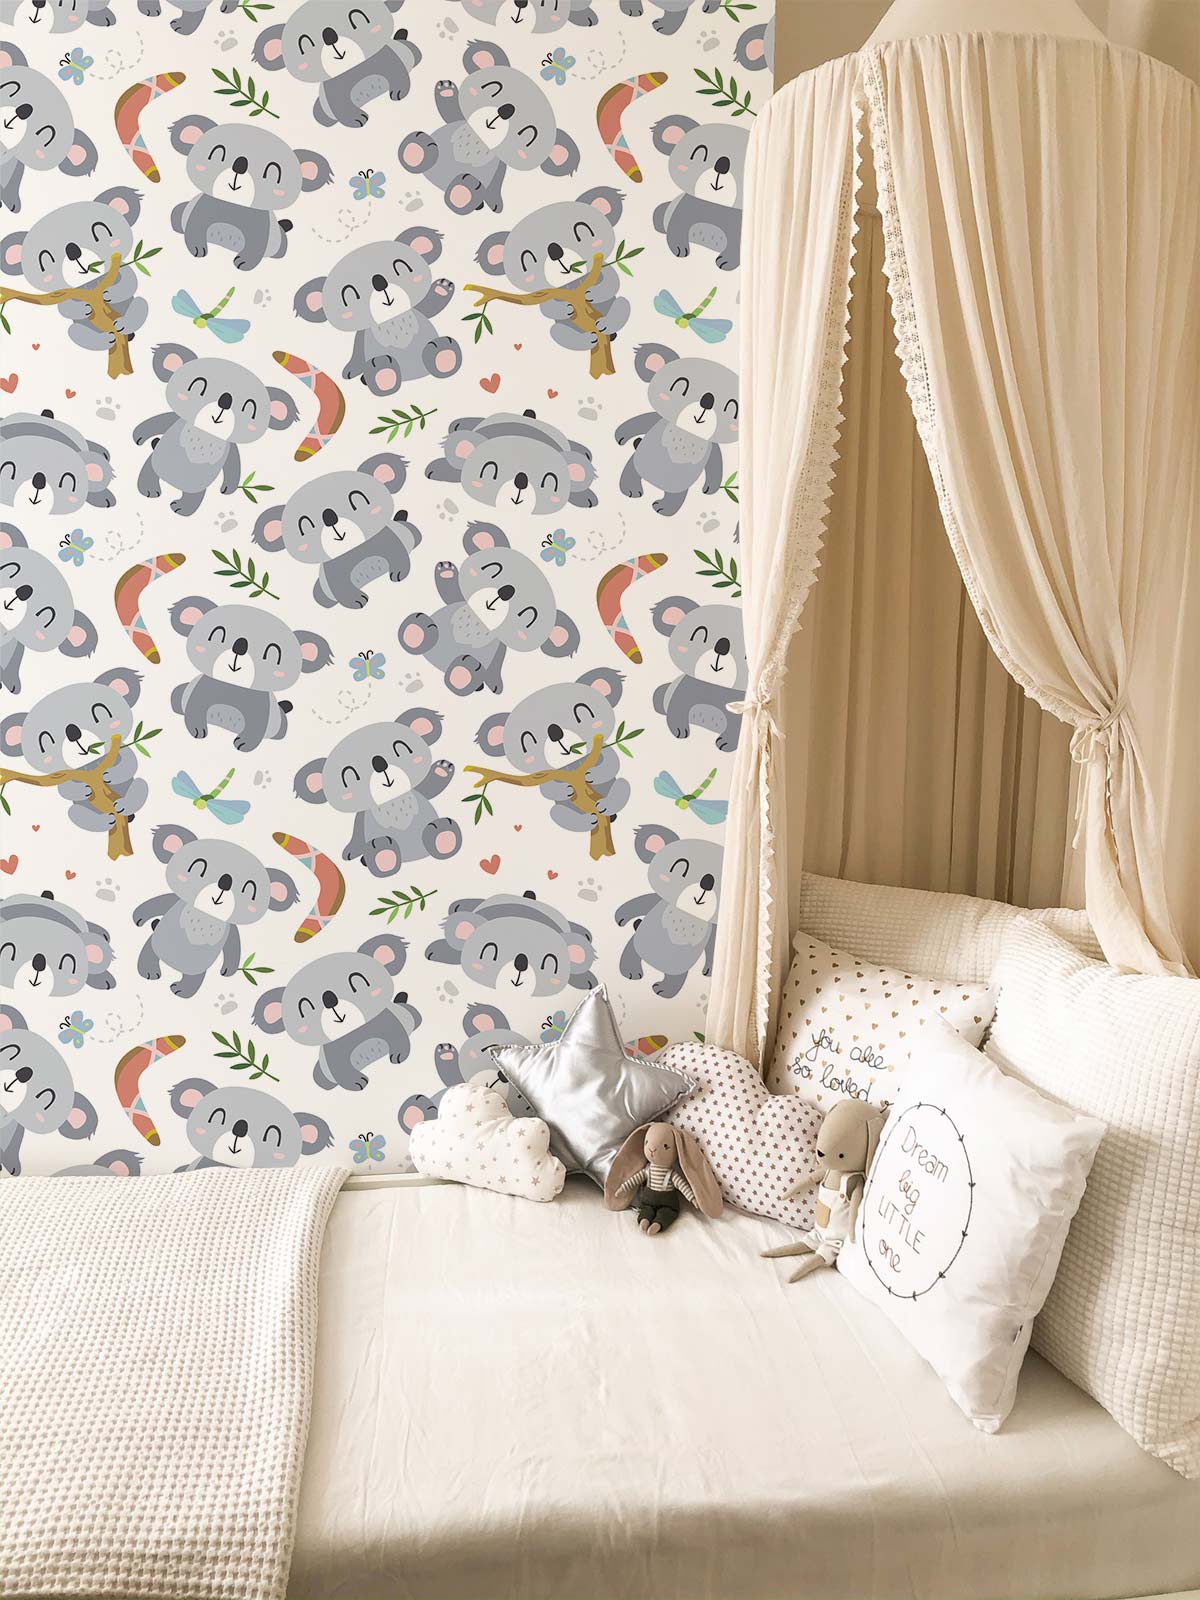 Tree & Koala Animal Pattern Wallpaper For Kid's Room